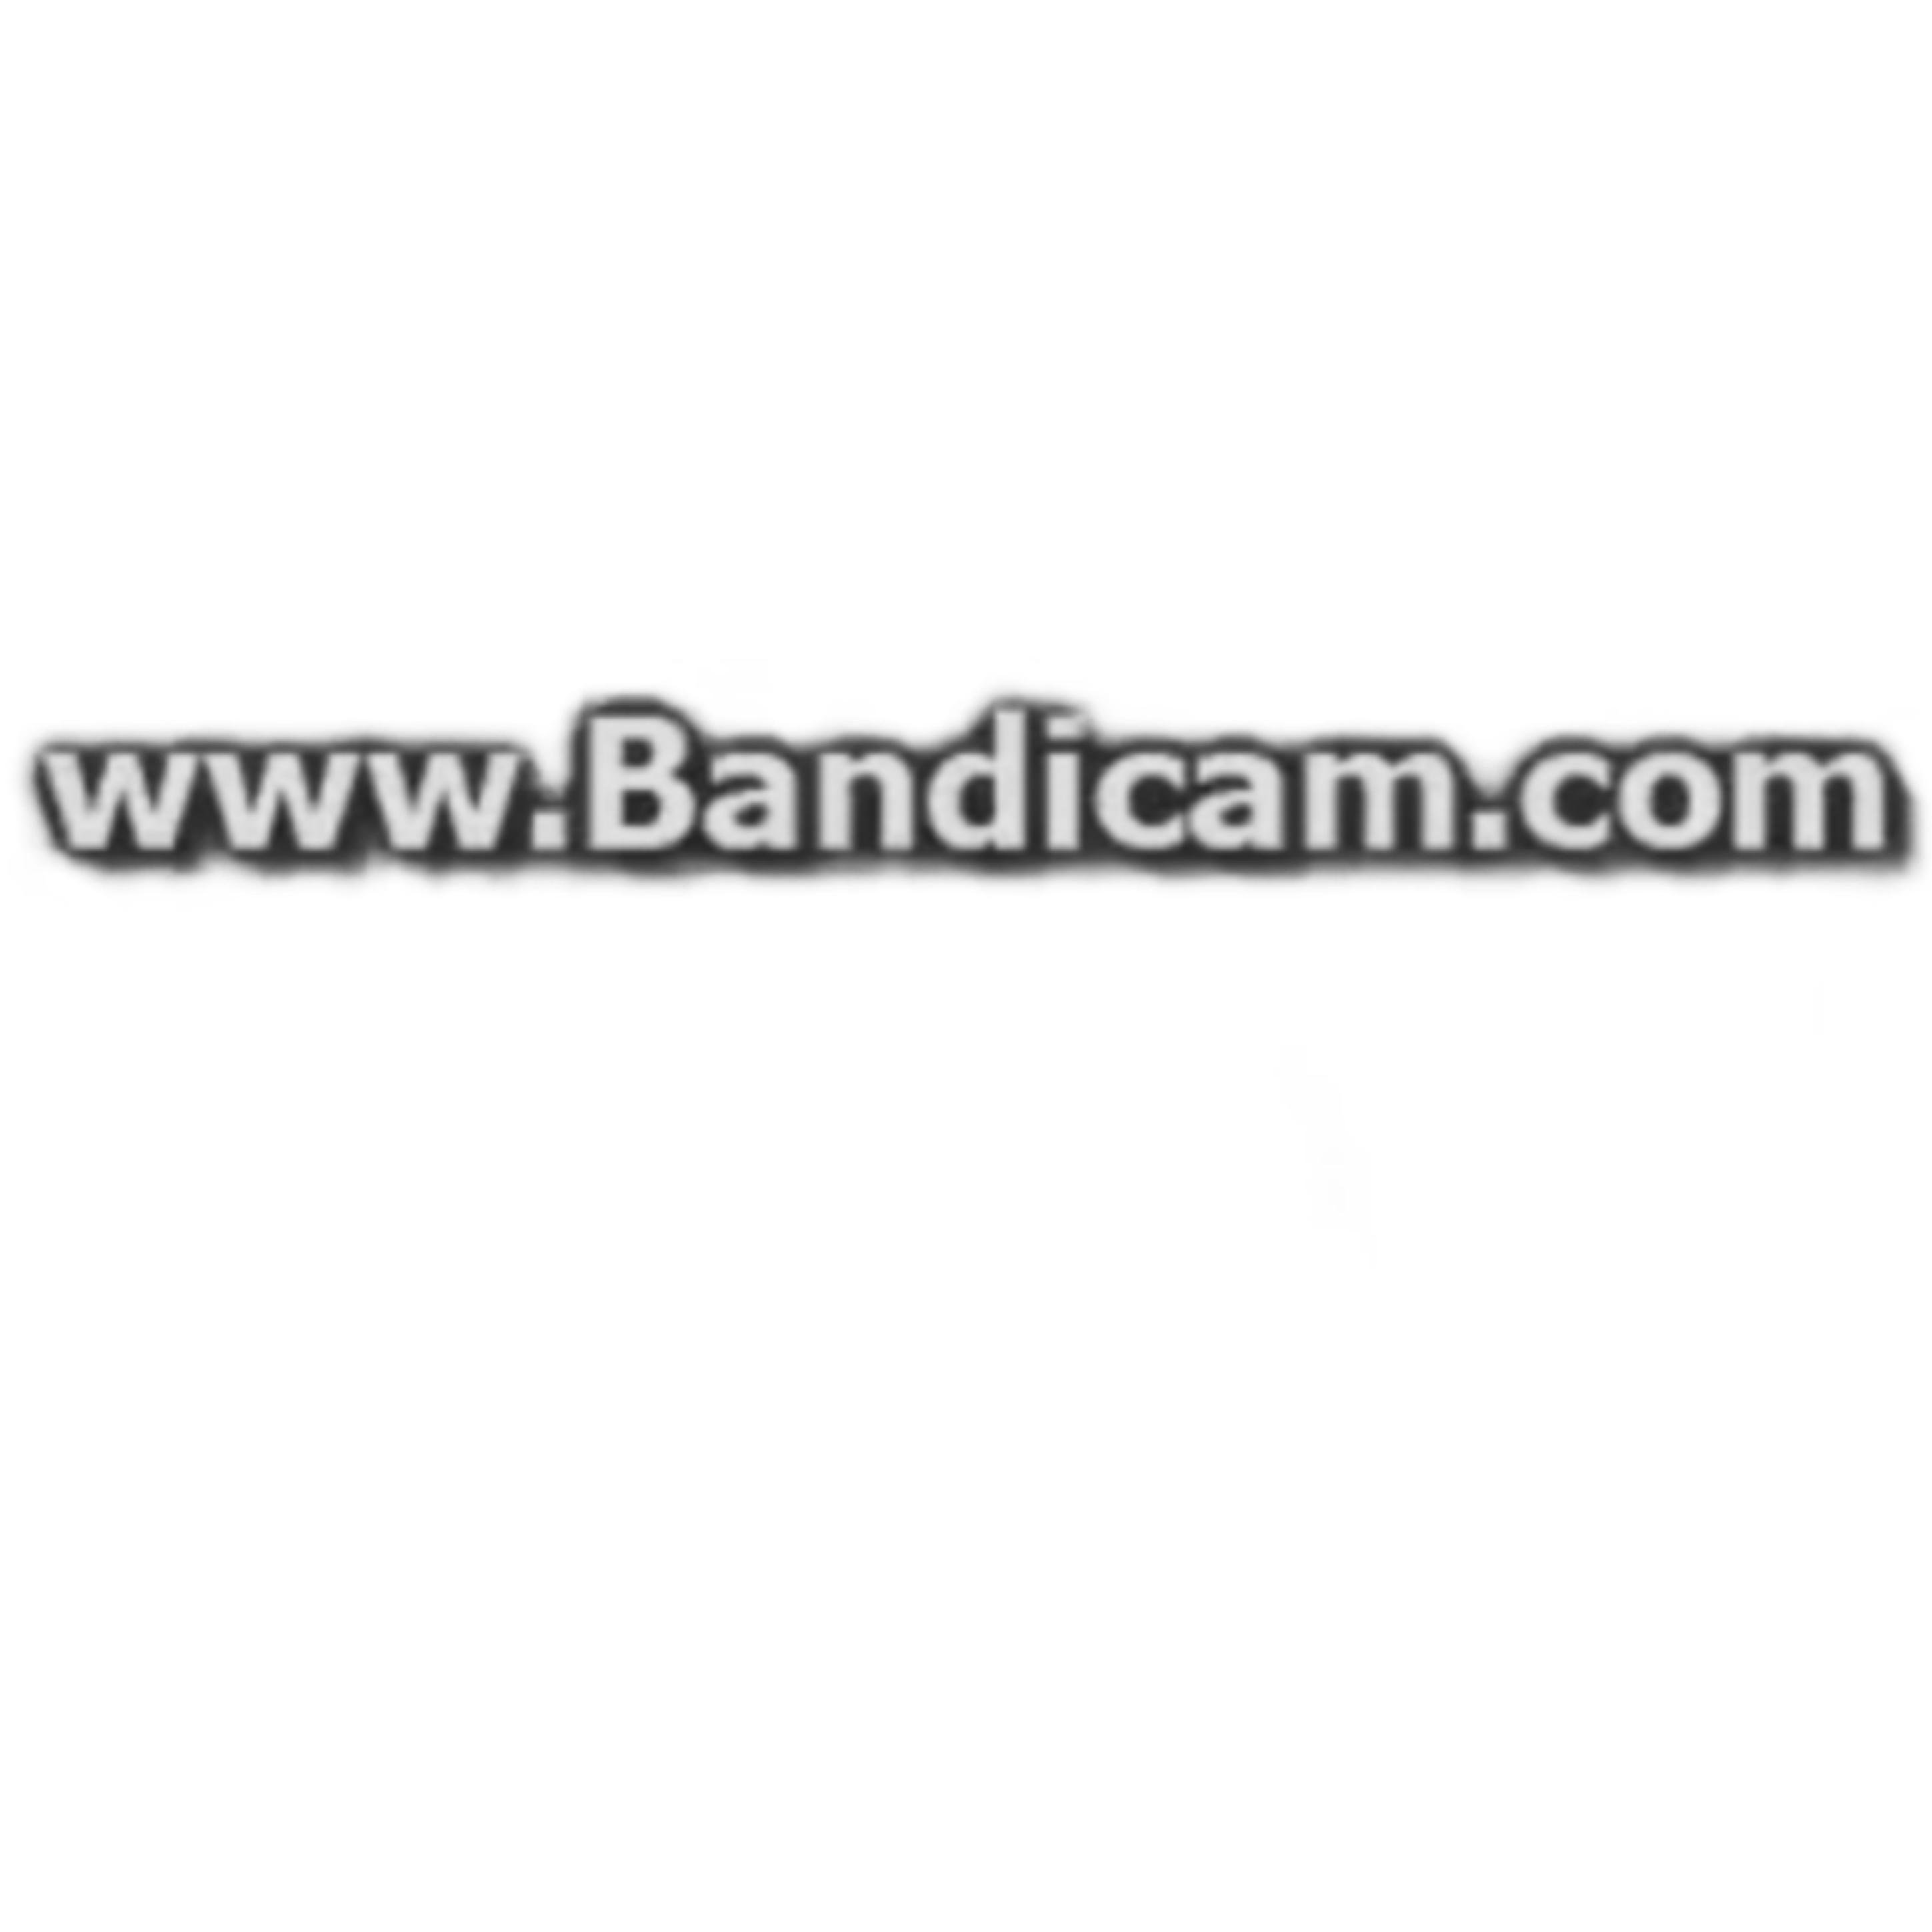 www bandicam com lucifer